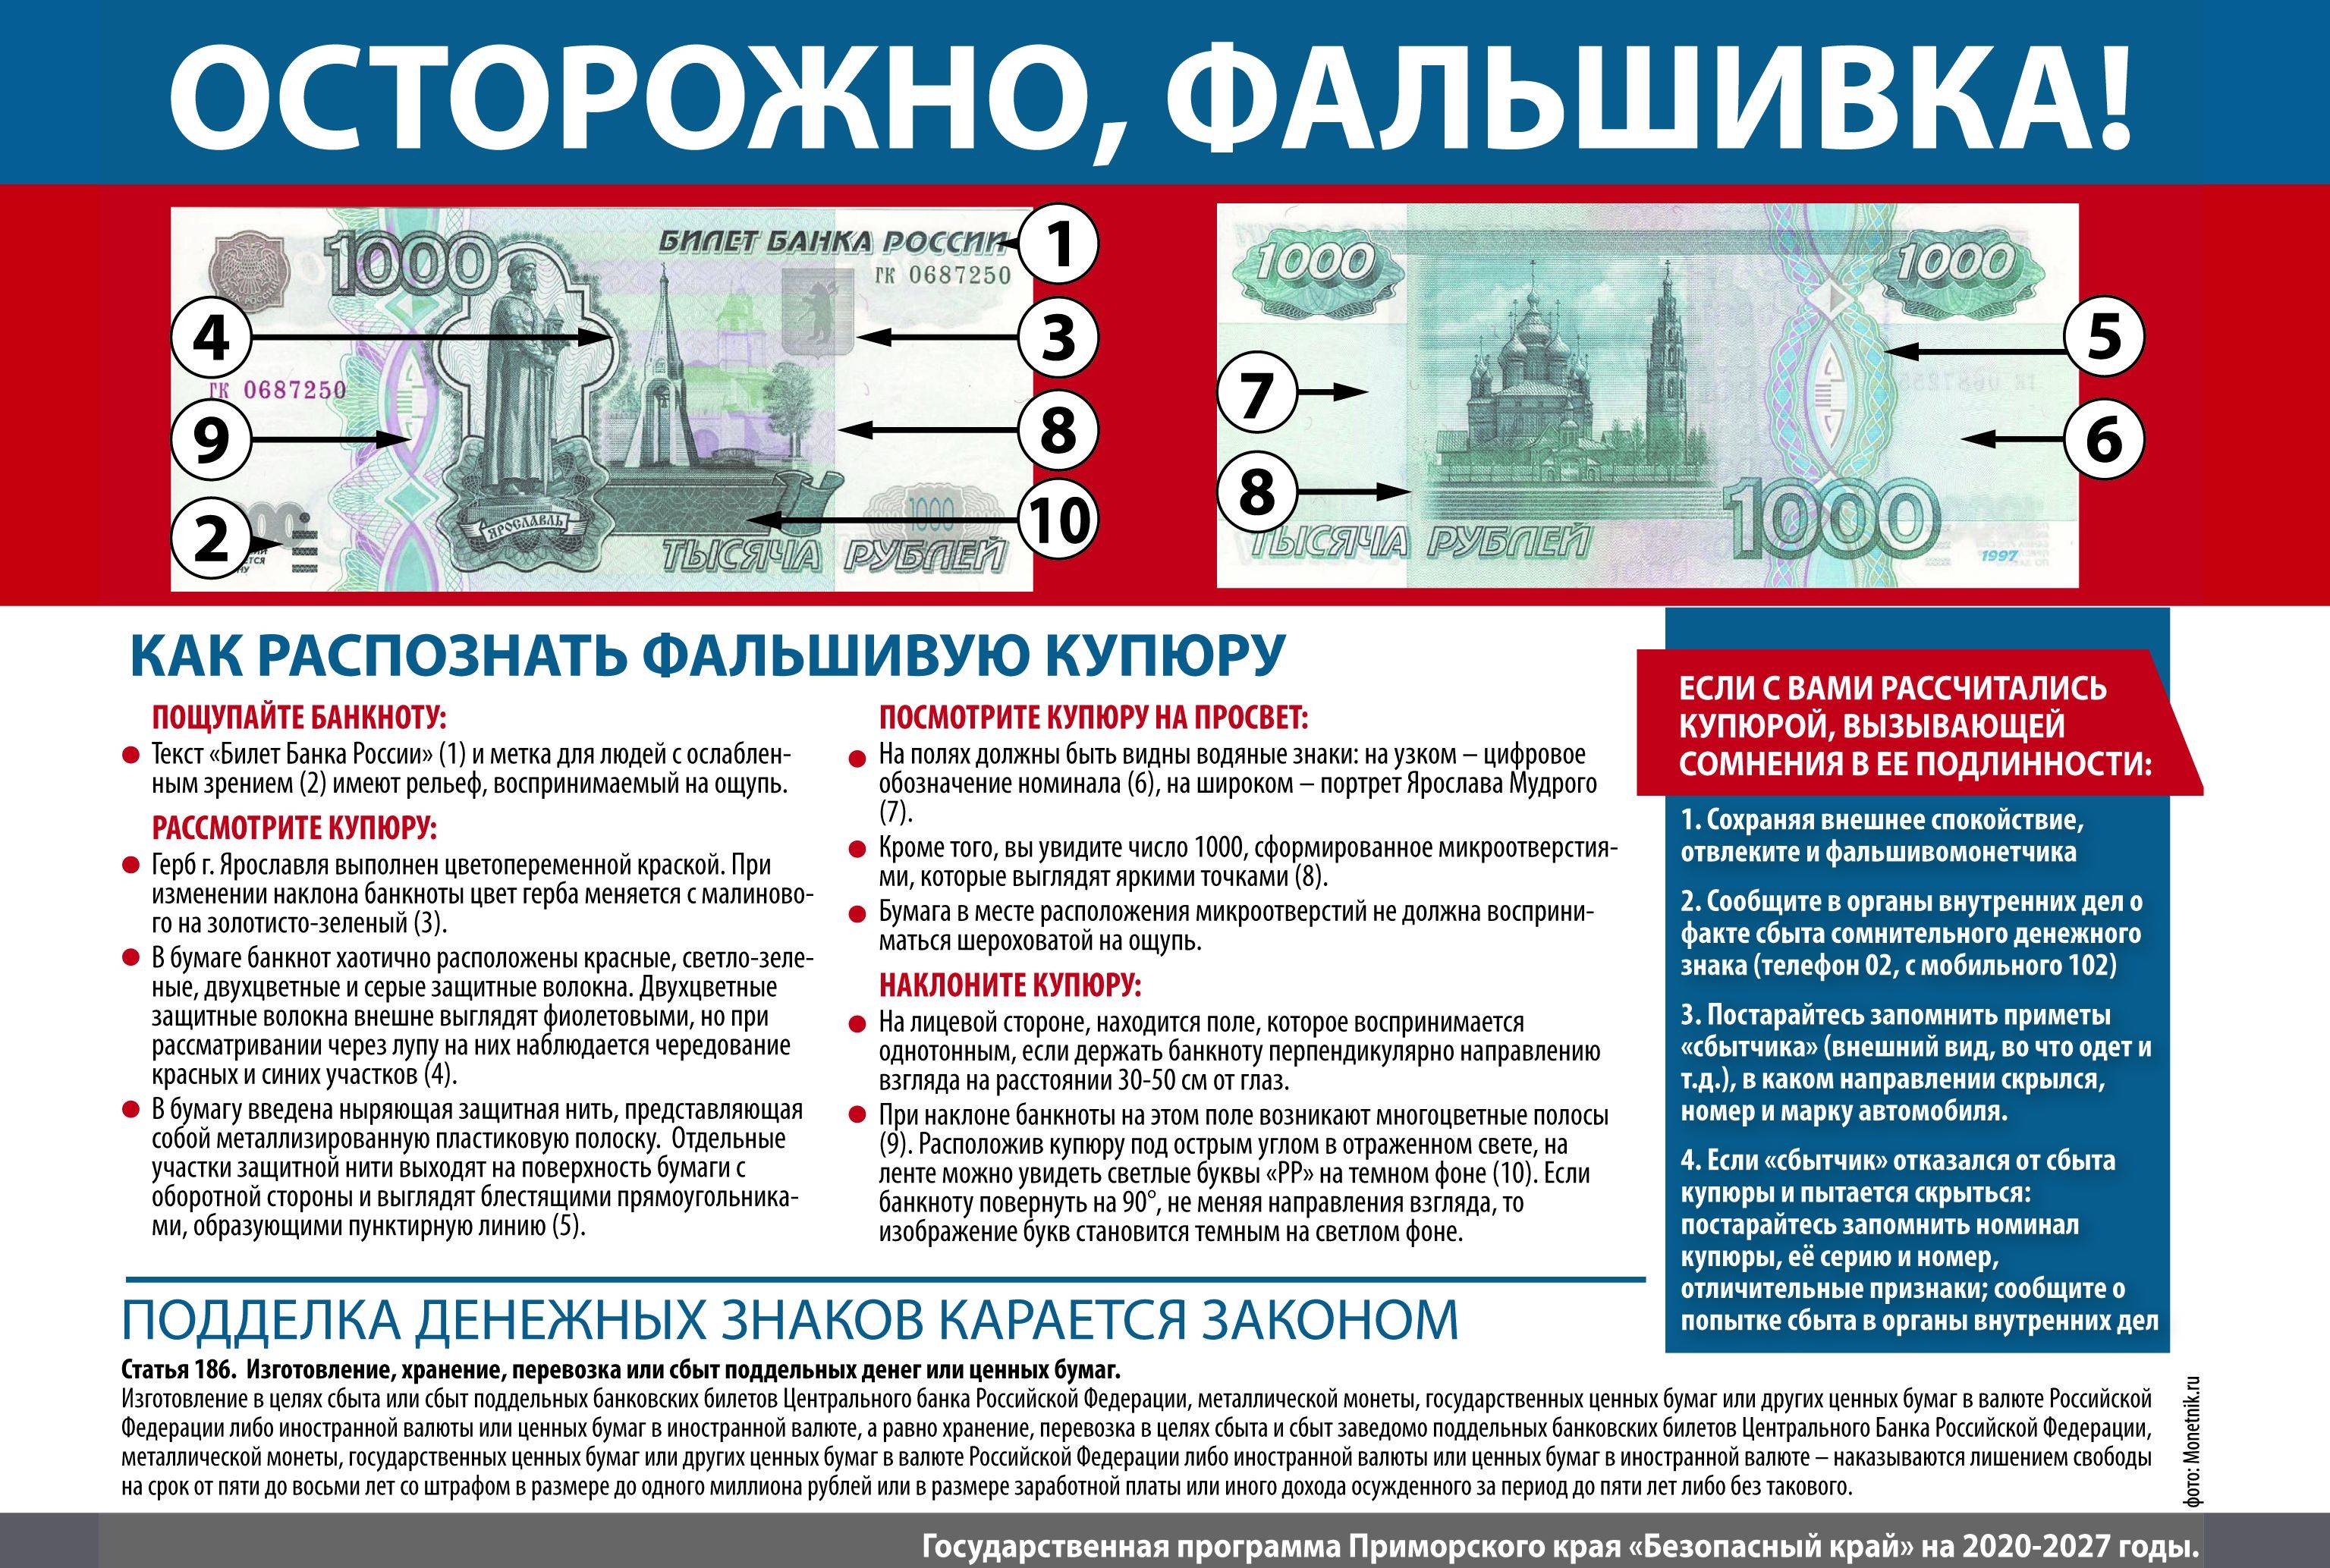 Как выглядит 500 рублей и как отличить поддельную купюру от настоящей